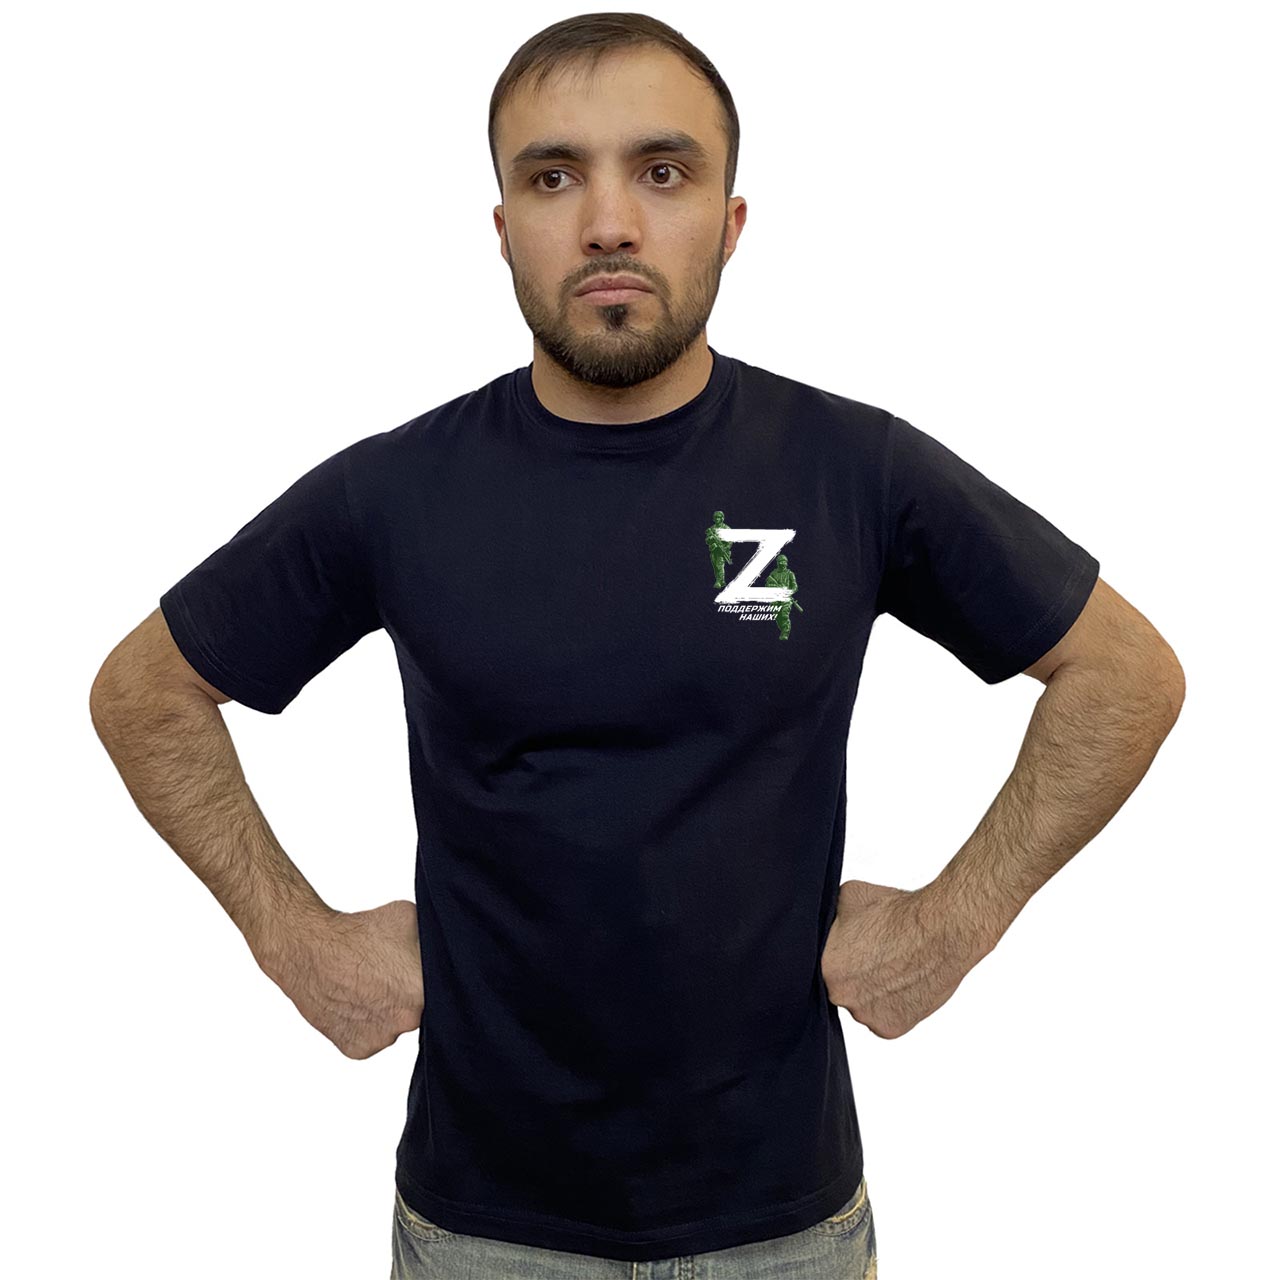 Тёмно-синяя футболка с термопринтом символ «Z» – поддержим наших!